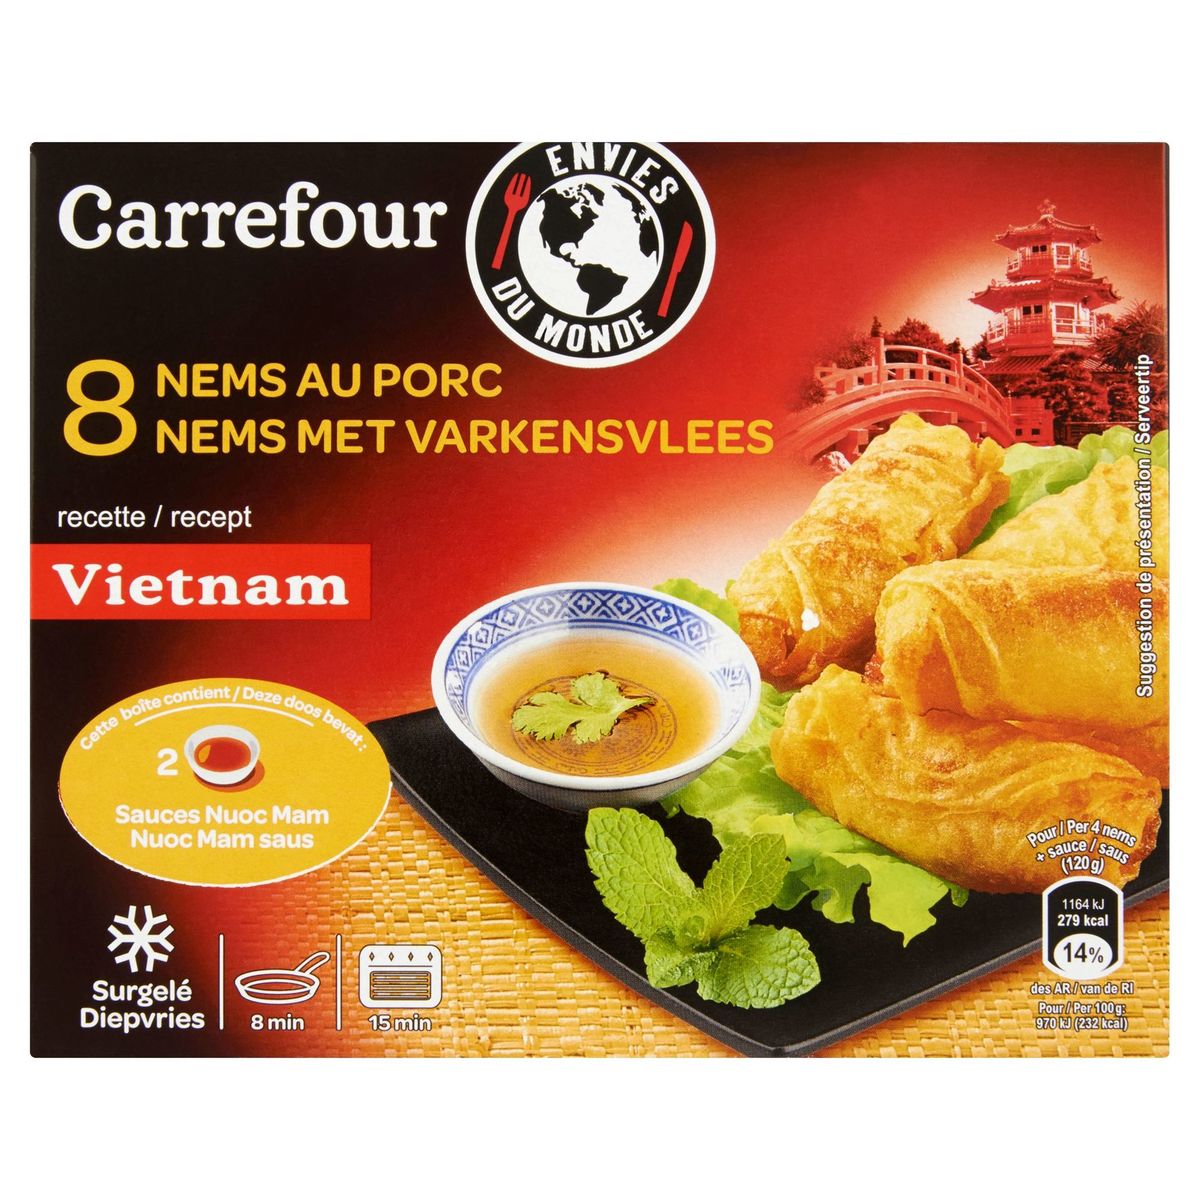 Carrefour Envies du Monde 8 Nems au Porc 240 g